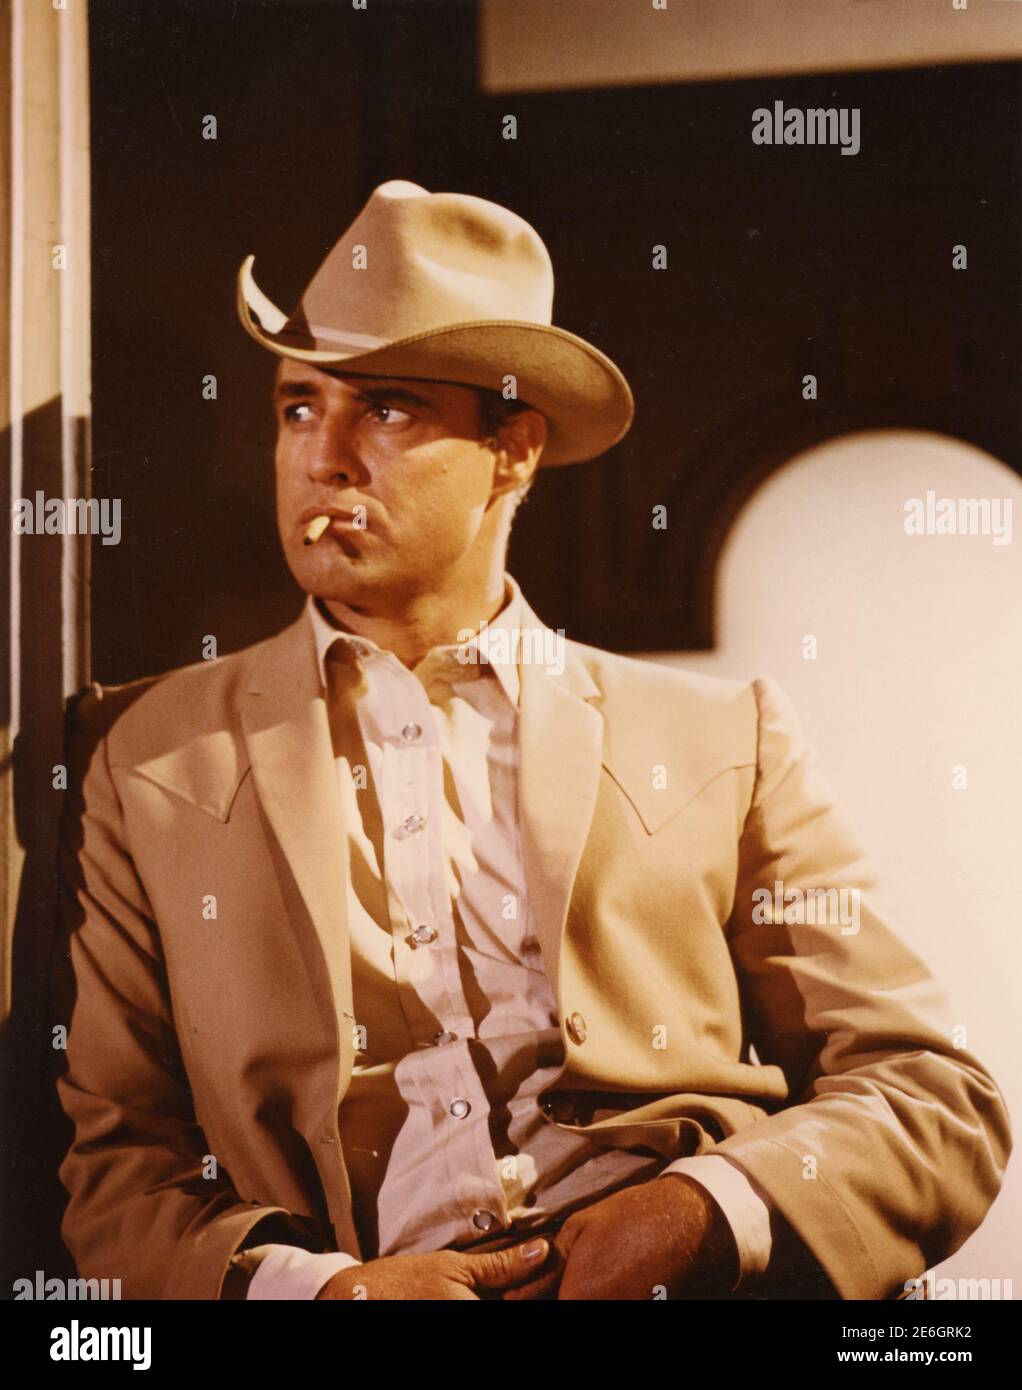 Actor y director de cine estadounidense Marlon Brando, EE.UU. 1980 Foto de stock